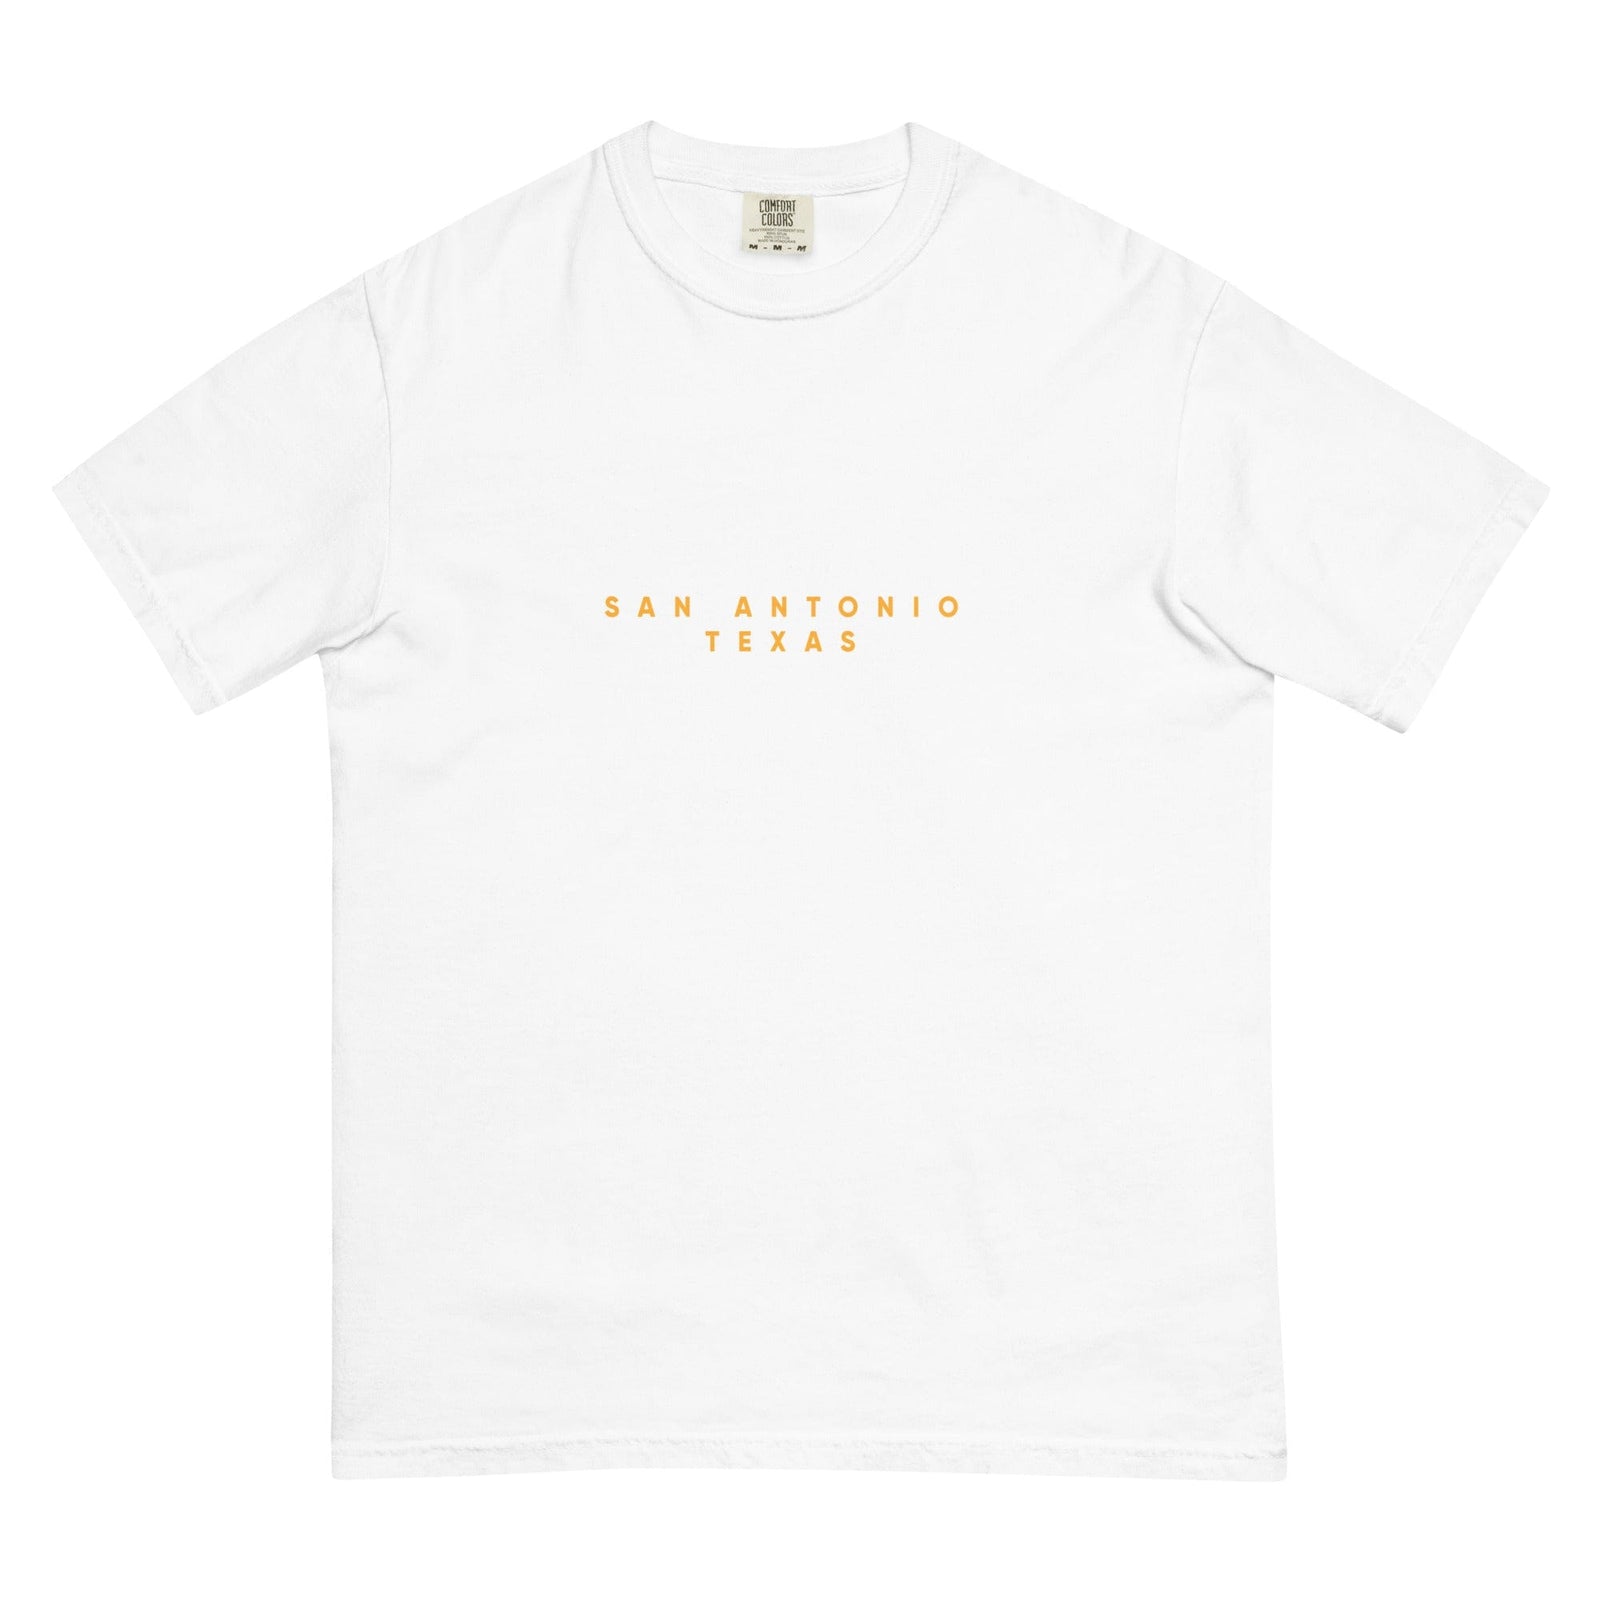 City Shirt Co San Antonio Comfort Colors T-Shirt White / S